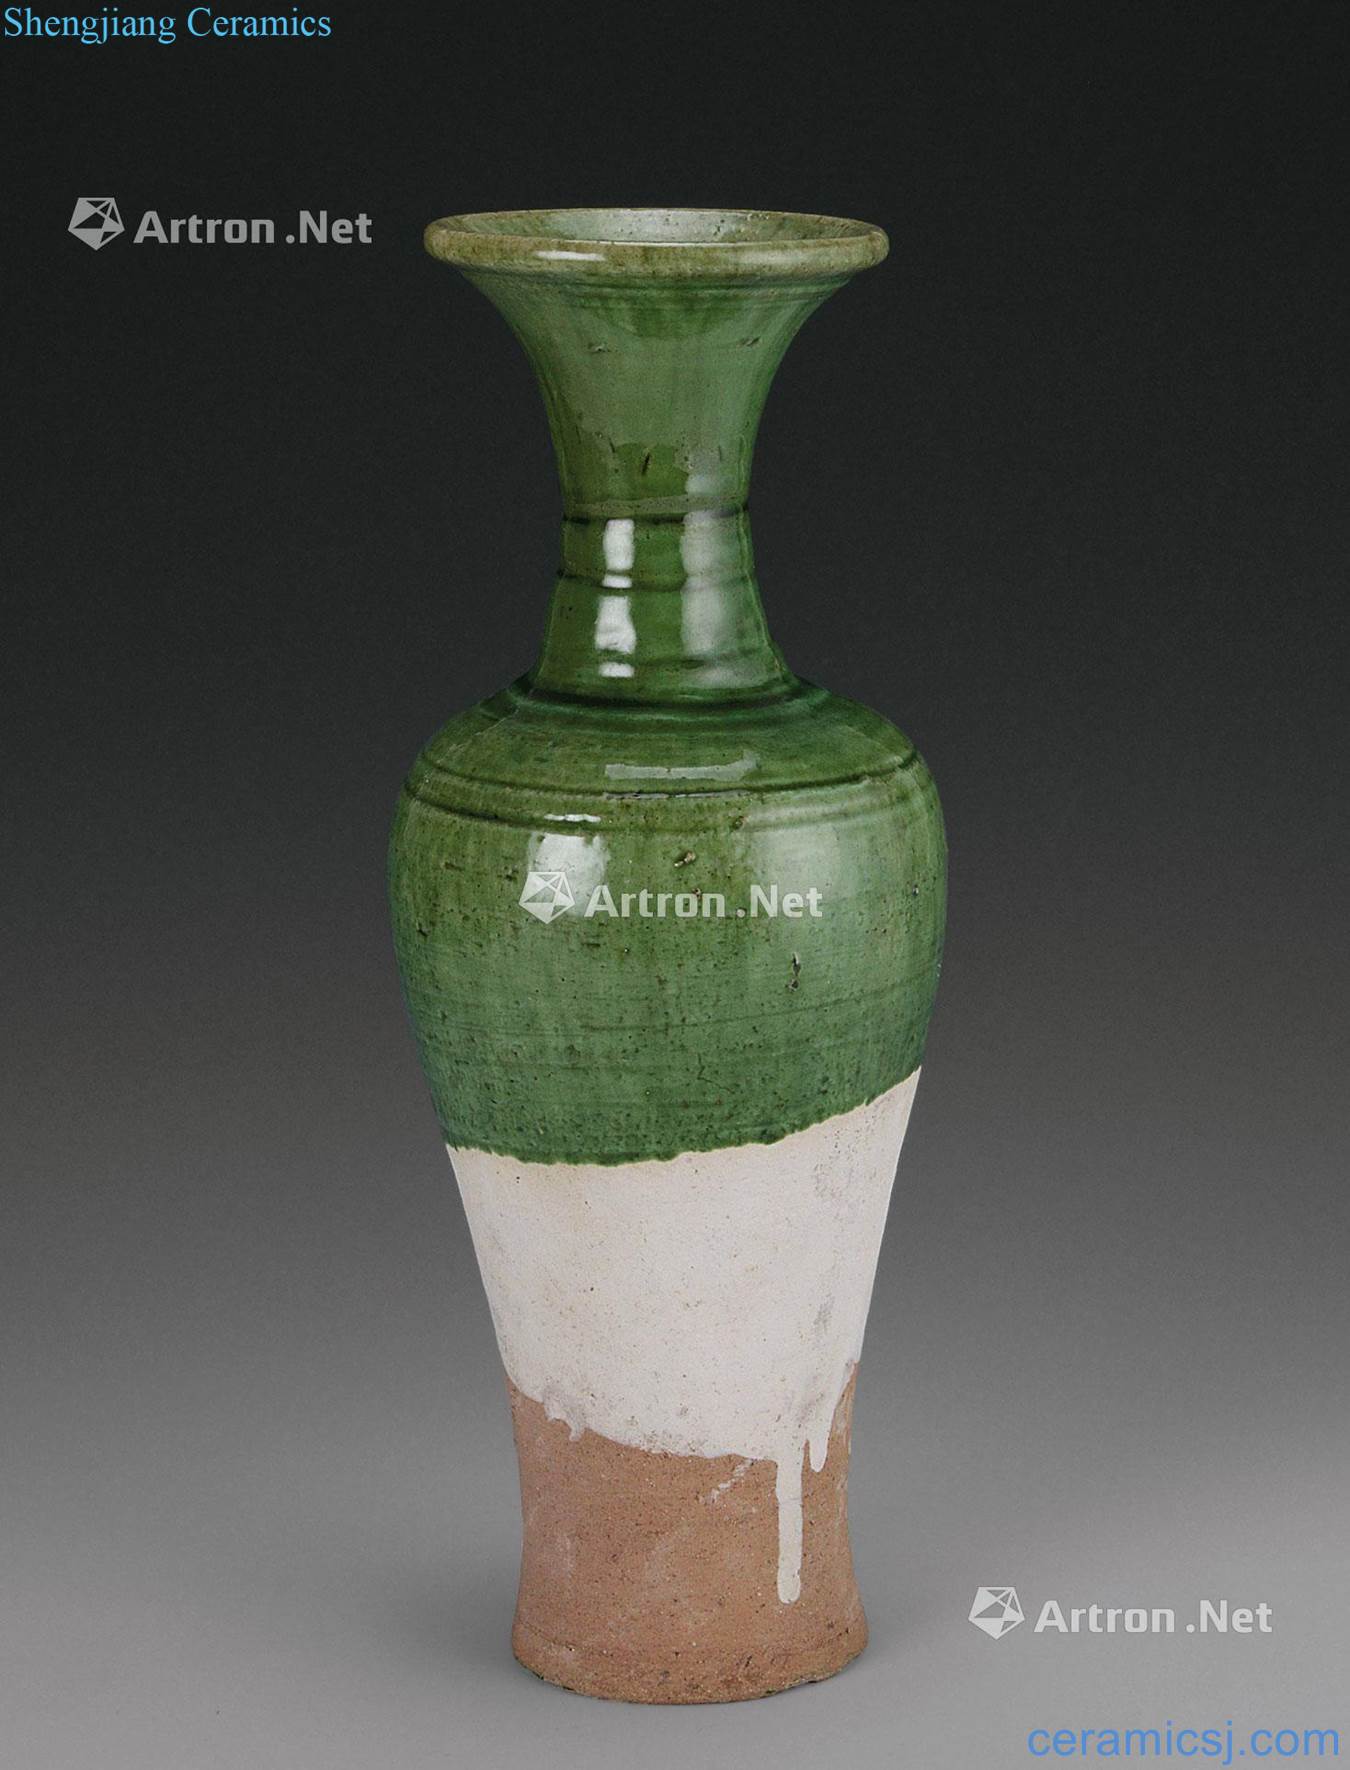 Liao dynasty (916-1125), green glazed flask